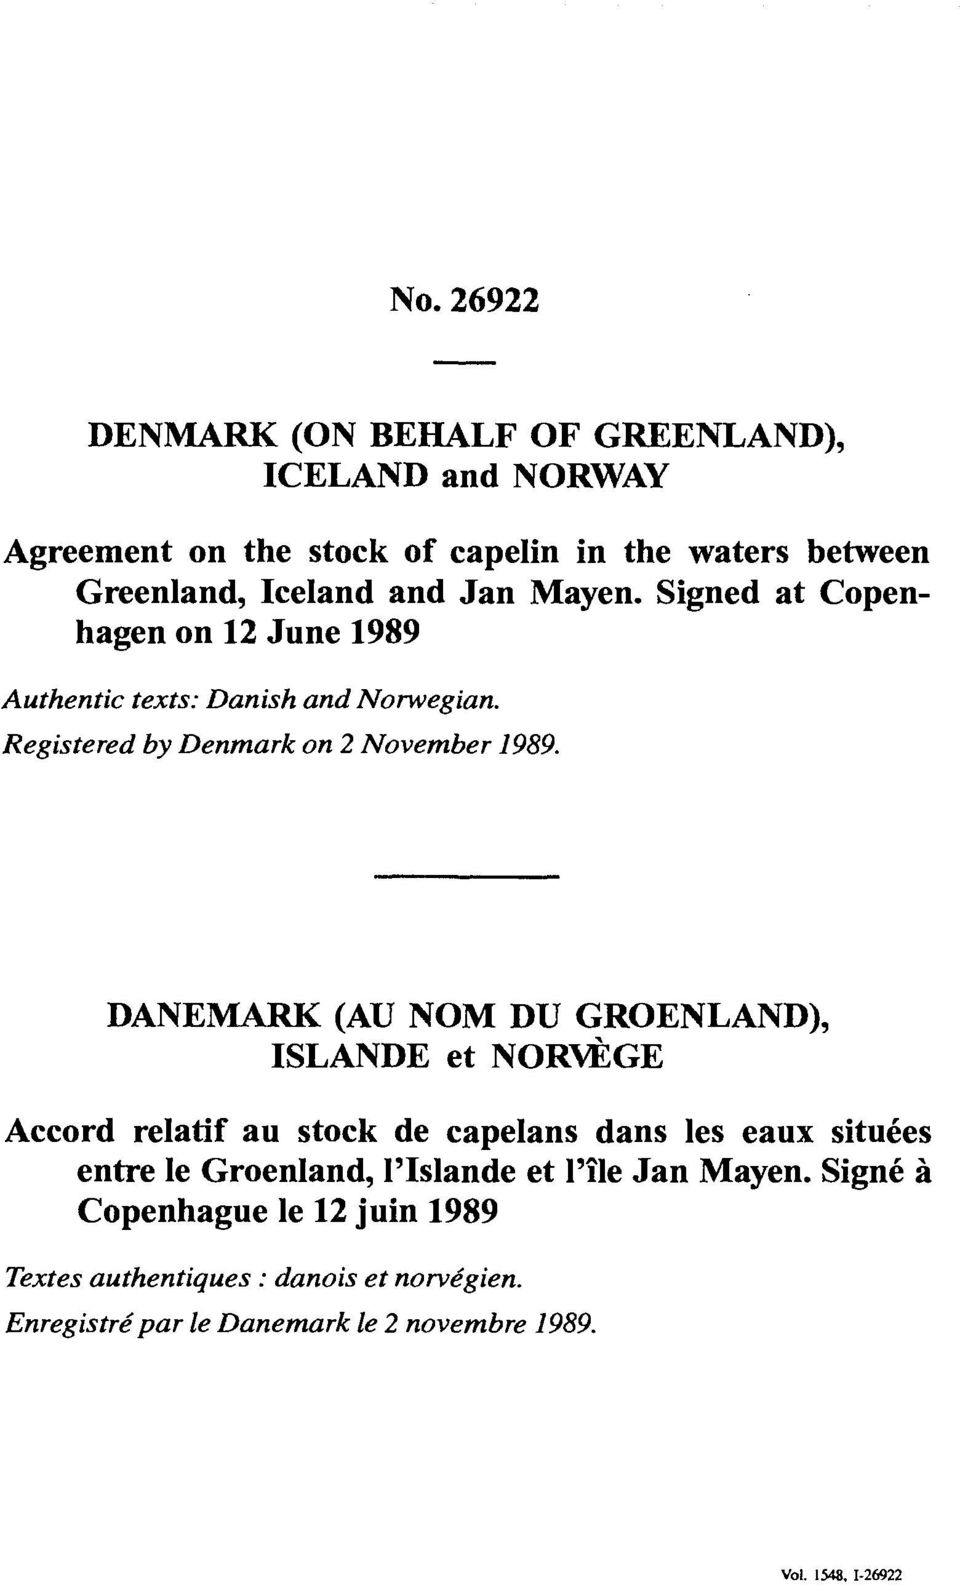 DANEMARK (AU NOM DU GROENLAND), ISLANDE et NORVÈGE Accord relatif au stock de capelans dans les eaux situées entre le Groenland, l'islande